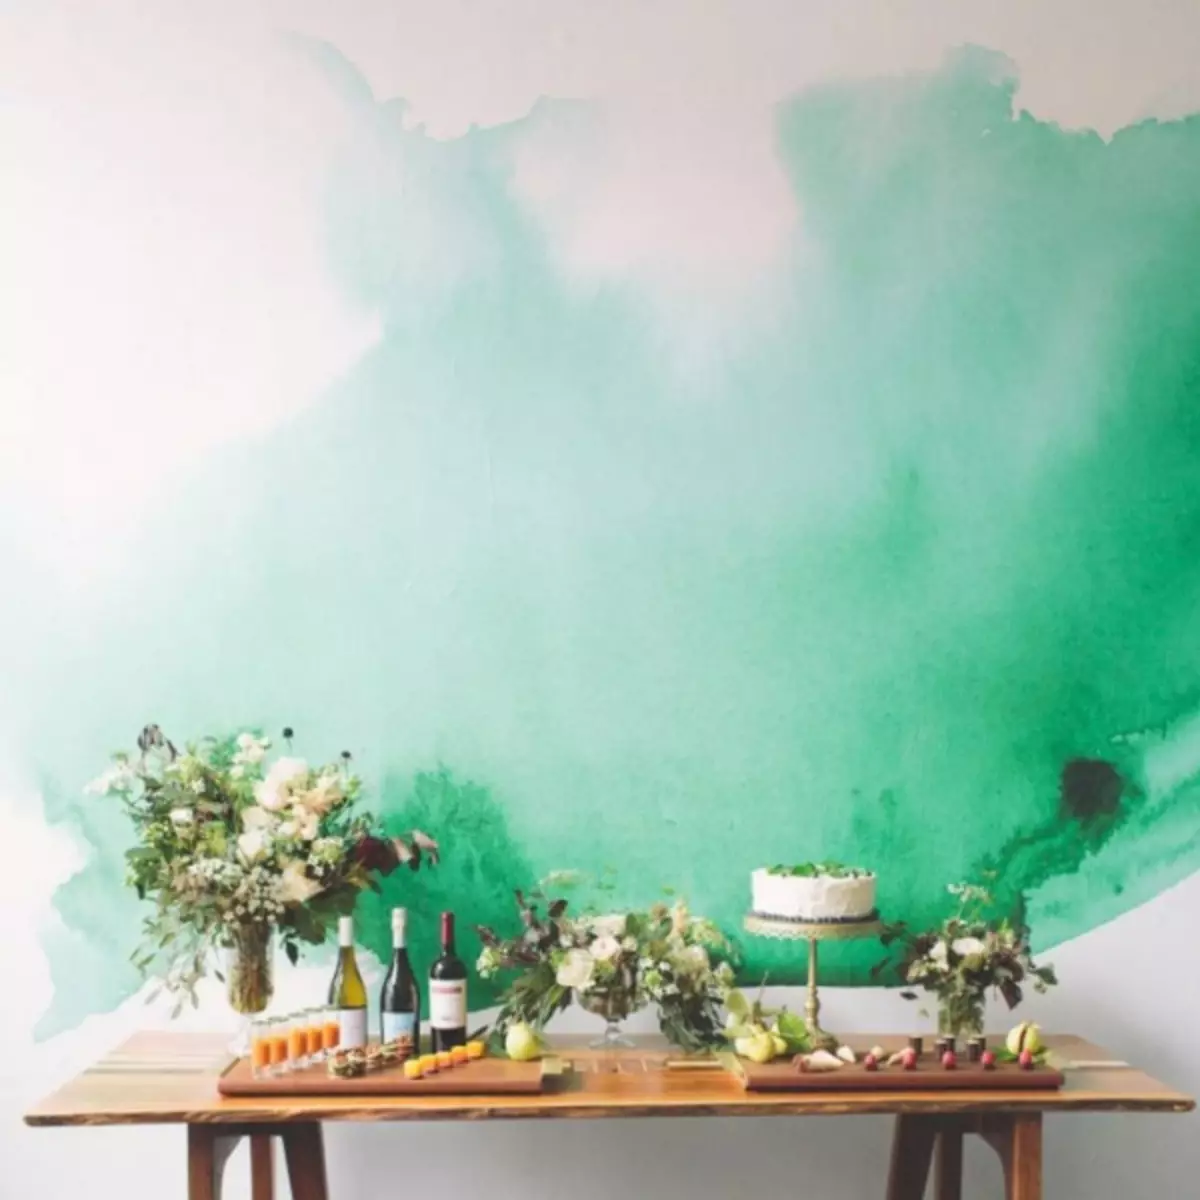 Boş bir duvar nasıl dekore edilir - 70 tasarım fikirlerin fotoğrafları